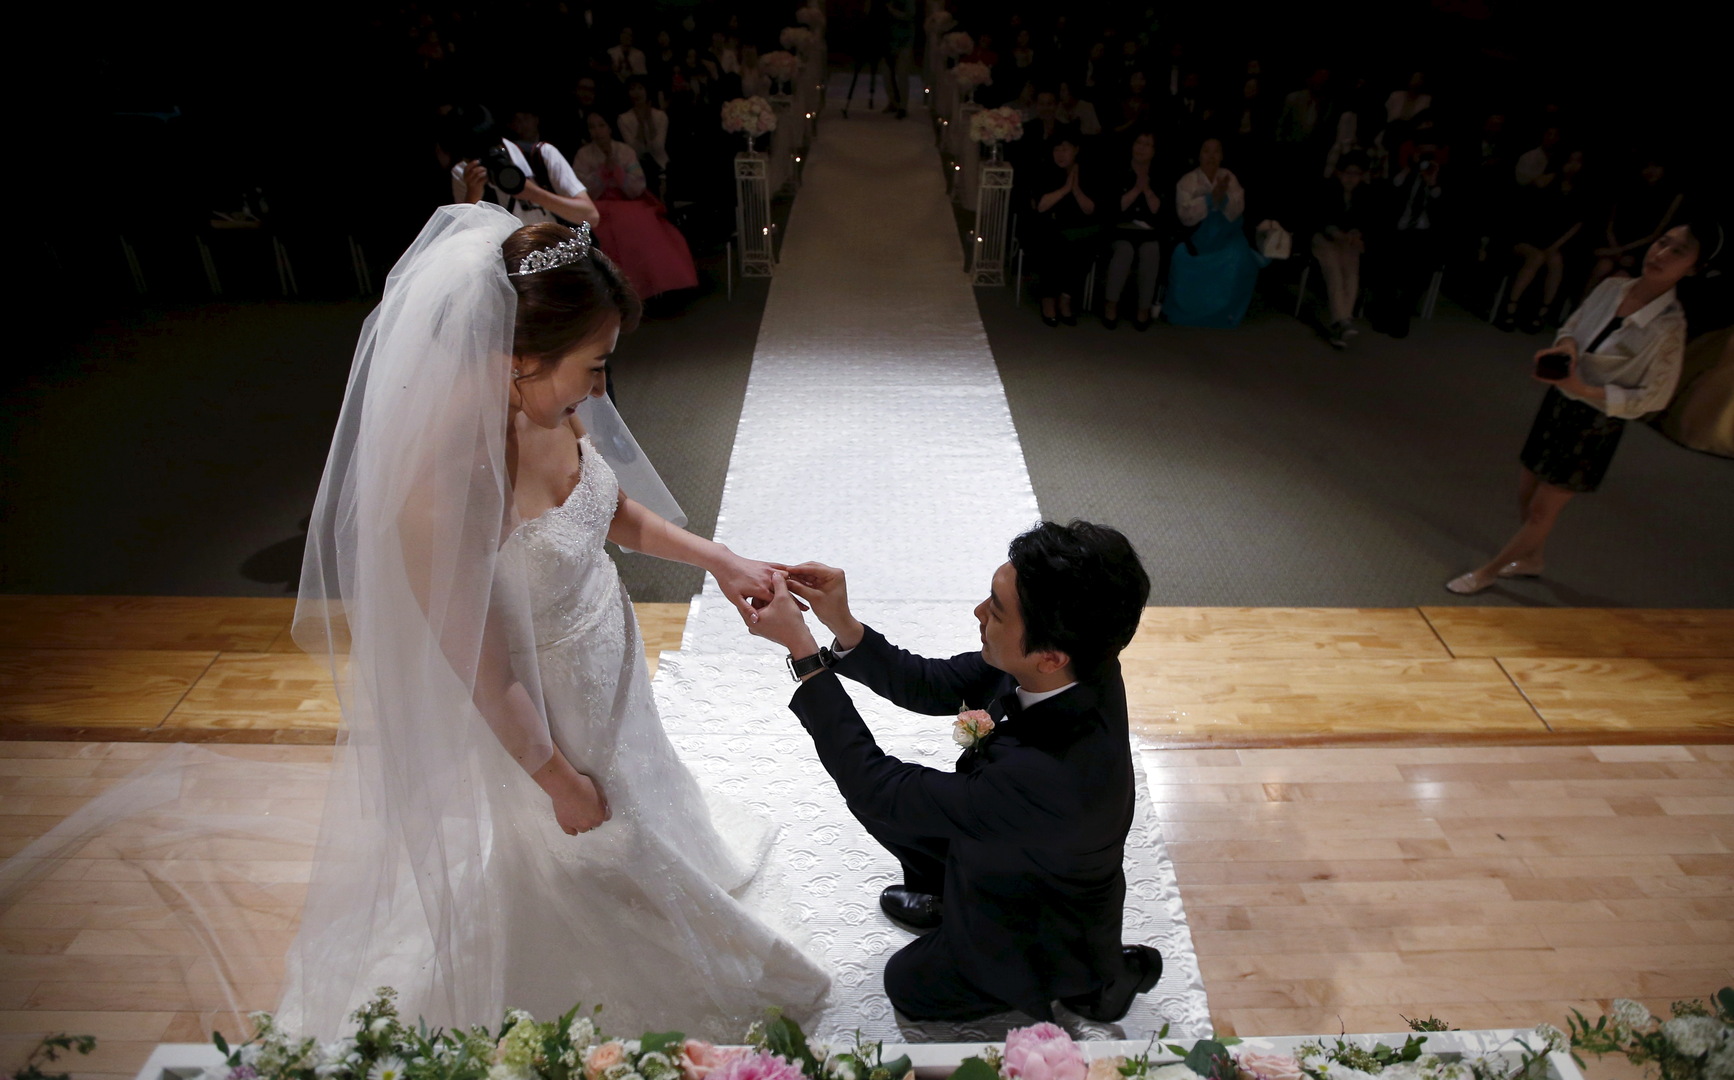 كوريا الجنوبية.. الرجال أنصار للزواج والنساء نصيرات للعزوبية!